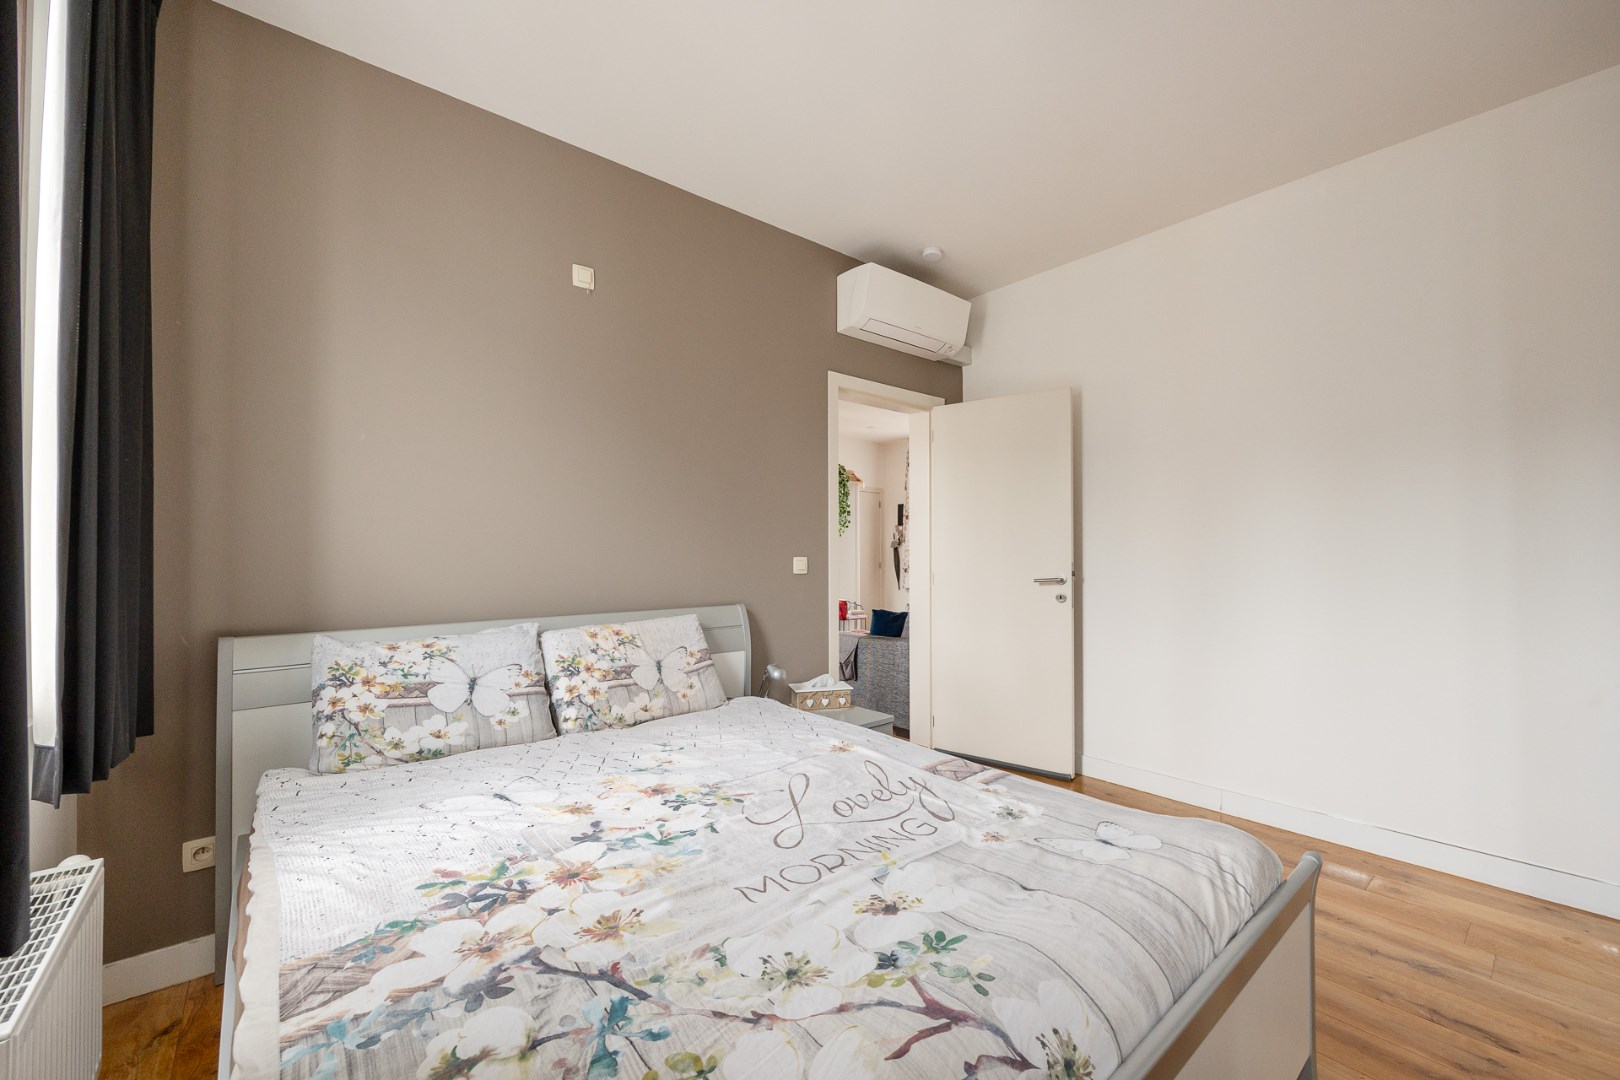 Ruim appartement met twee slaapkamers in hartje Mechelen 